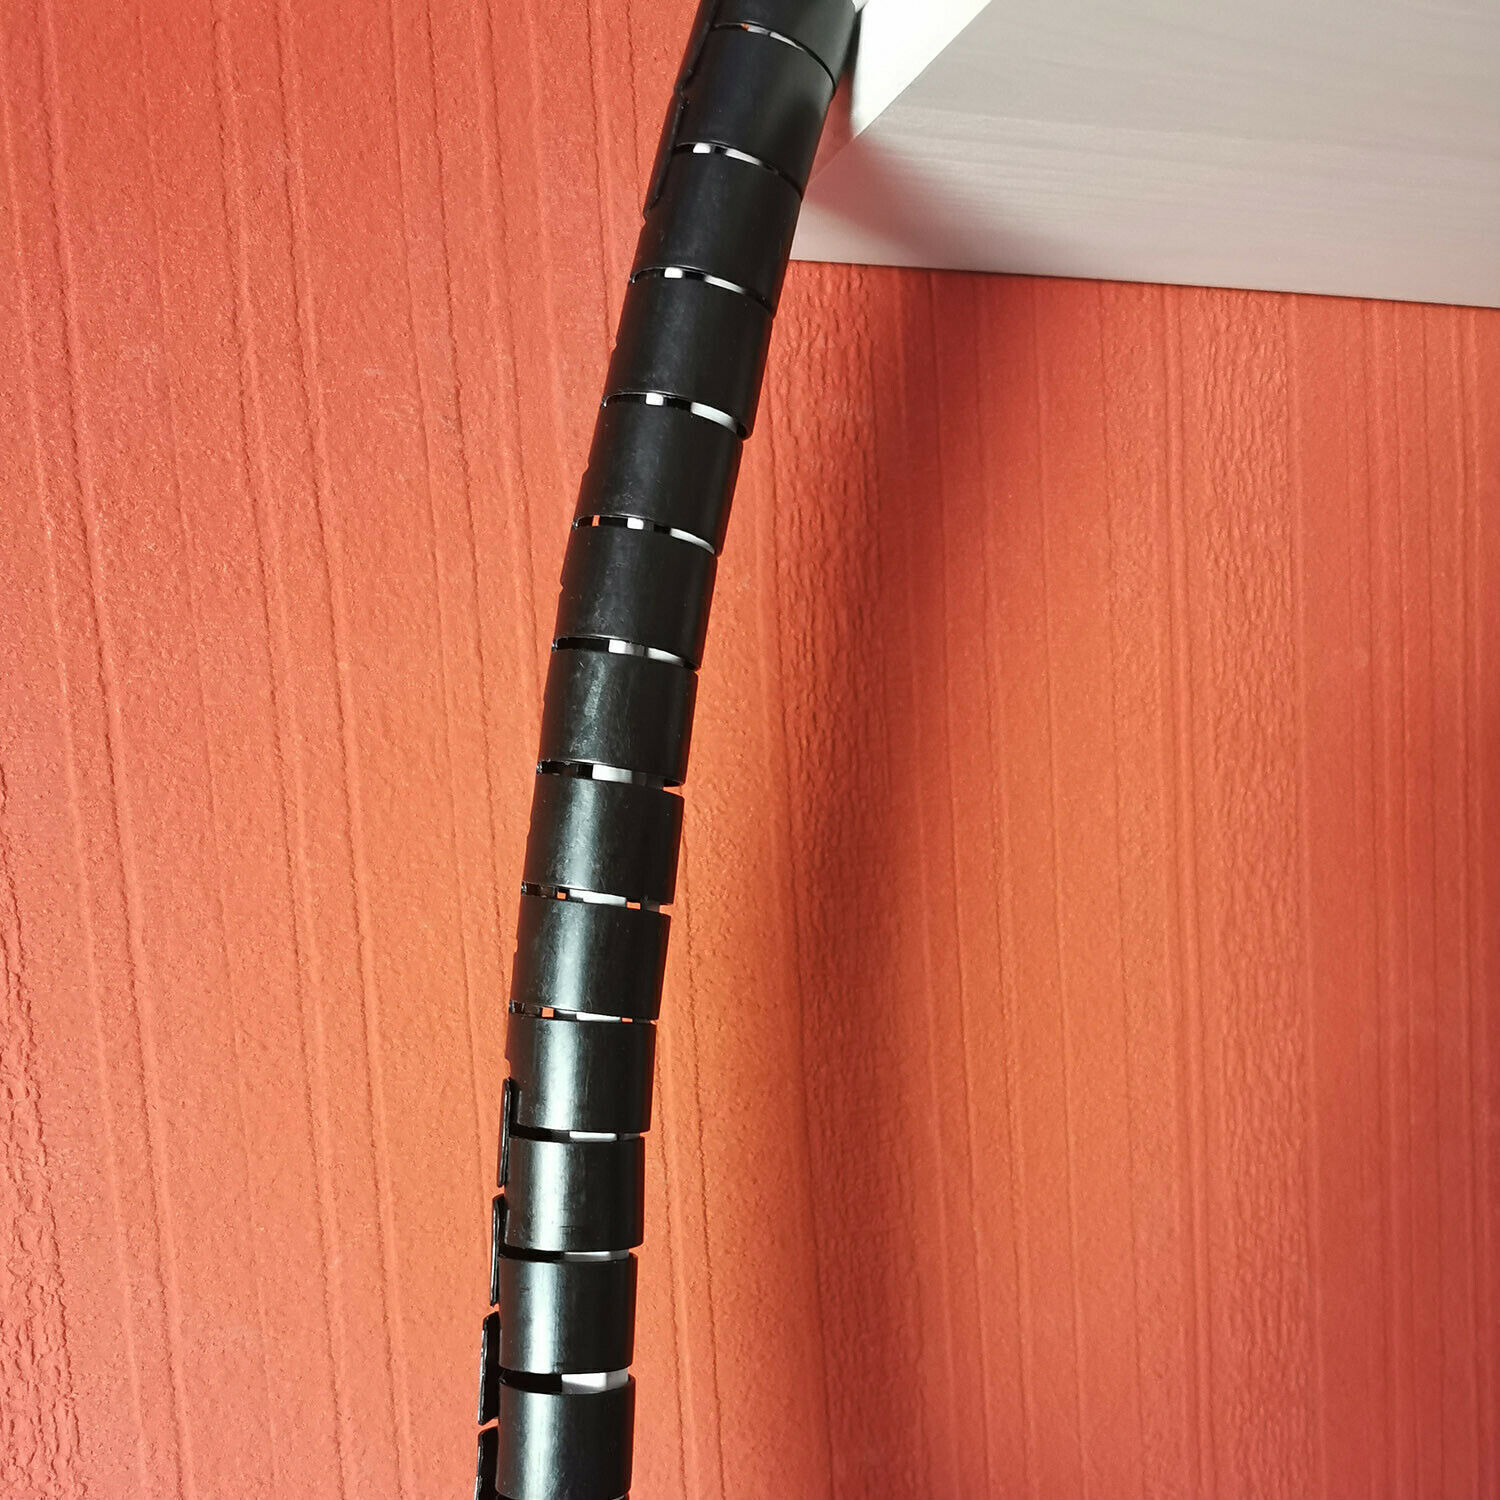 3 Meter (Dm. 22 mm) Flexible Kabelführung Kabel Schlauch Spirale Spiralschlauch Grau